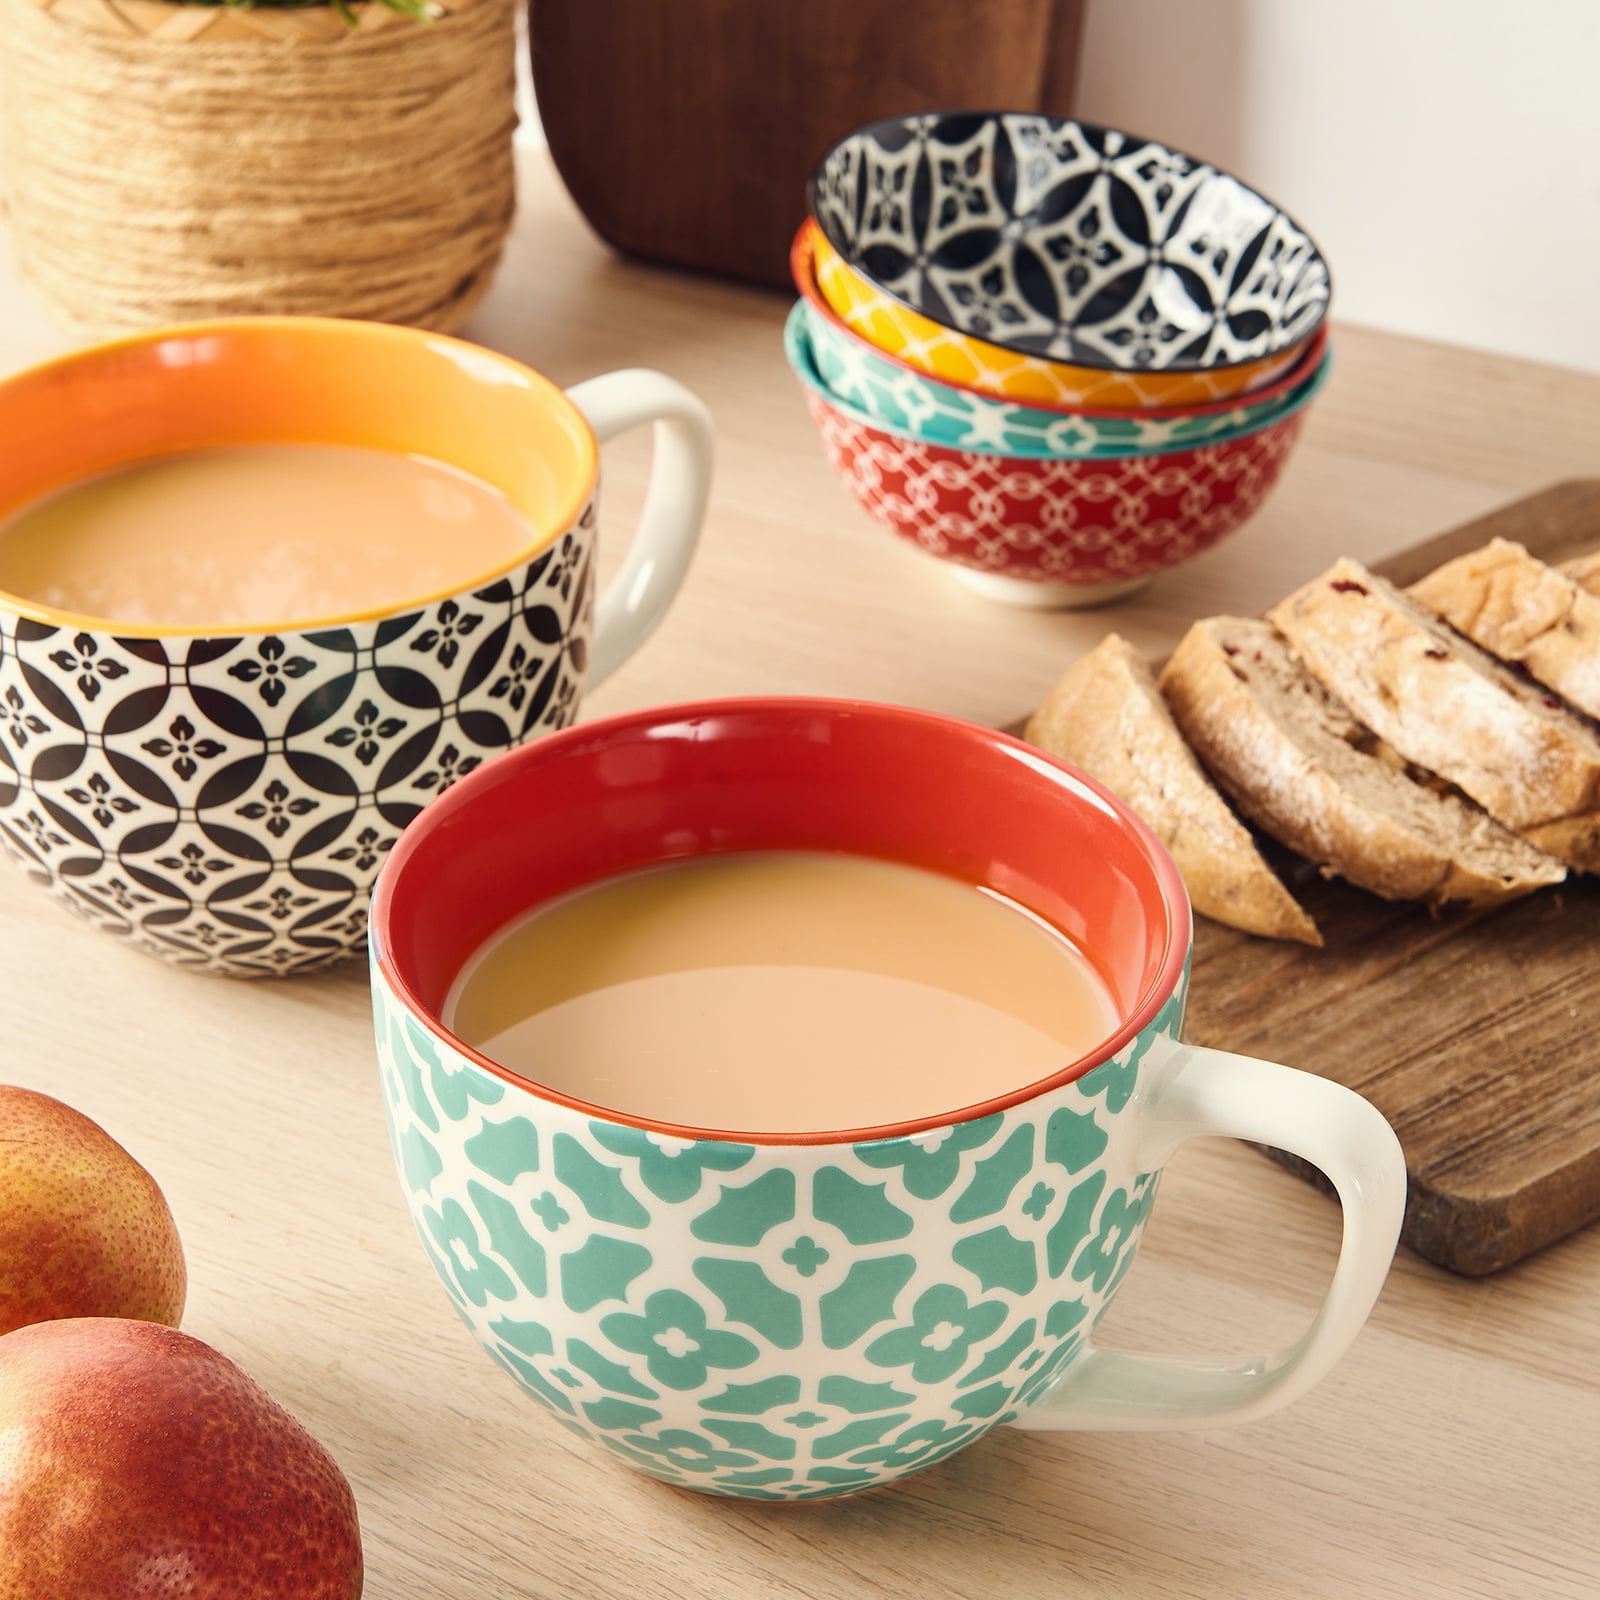 Bruntmor Gray 24 Oz Coffee Mugs Set of 4, Tea, Soup & Cereal Crocks, 24 Oz  - Dillons Food Stores